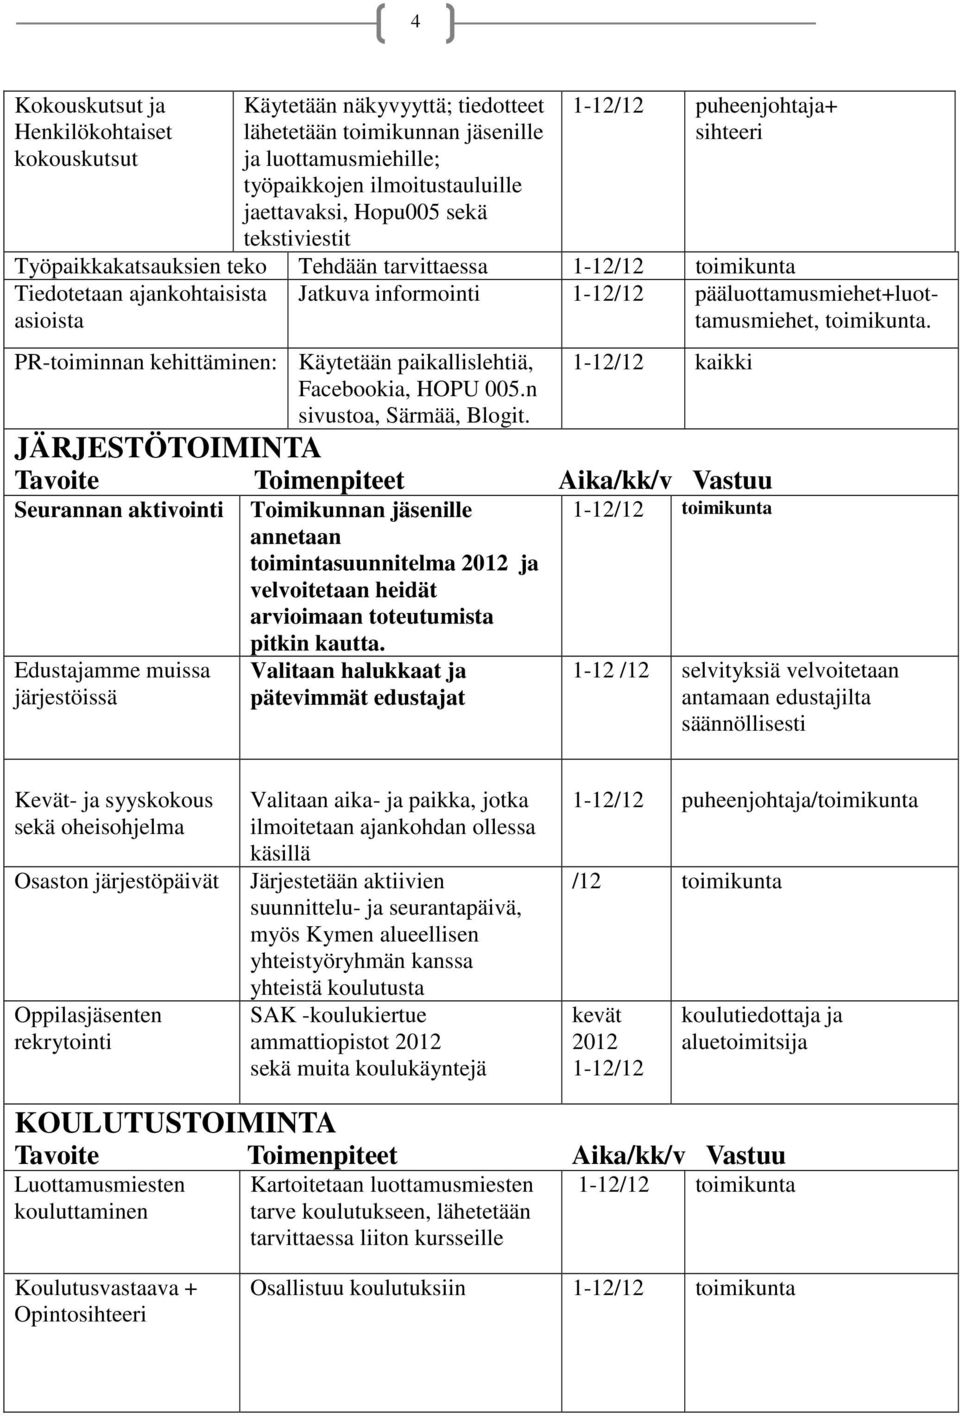 paikallislehtiä, Facebookia, HOPU 005.n sivustoa, Särmää, Blogit. Jatkuva informointi 1-12/12 pääluottamusmiehet+luottamusmiehet, toimikunta.